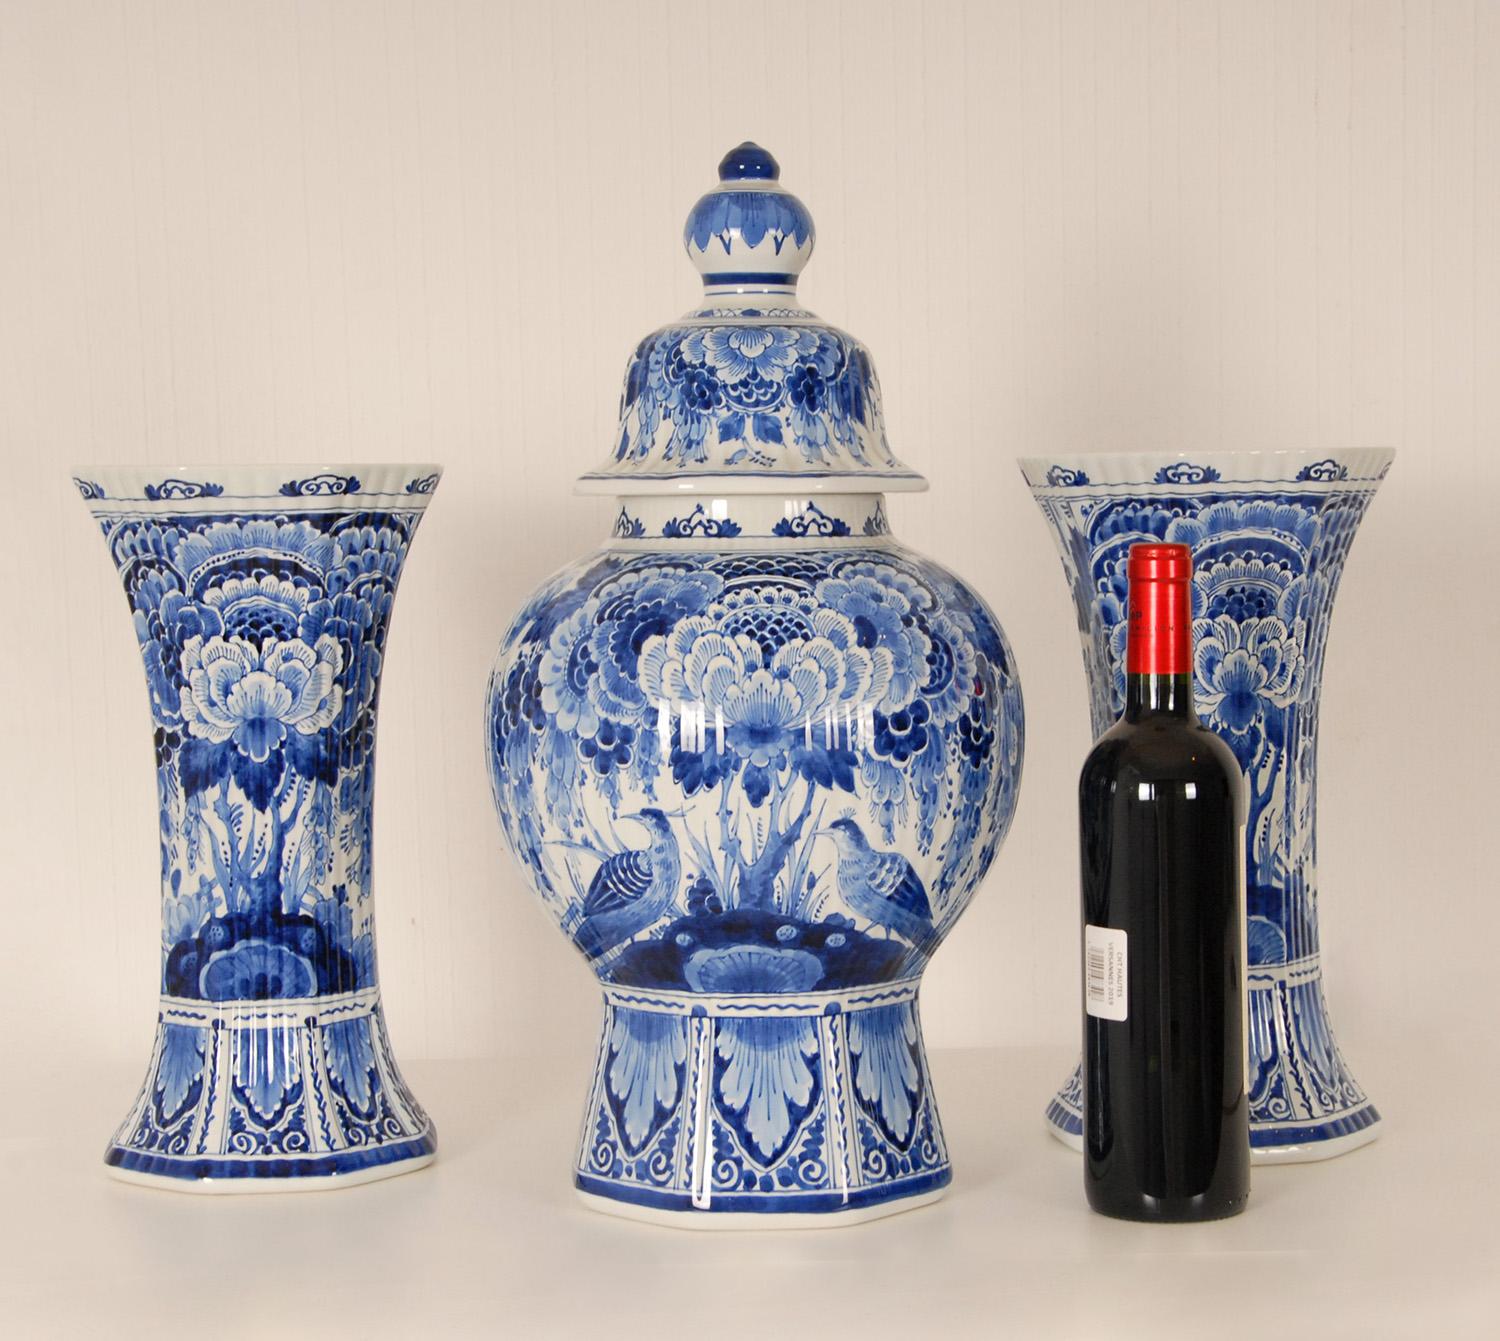 Eine 3-teilige Garnitur niederländischer Vasen aus Delft Royal Delft - Urnen.
Hohe dekorative überdachte Balustervasen auf einem achteckigen Fuß mit 2 passenden Bechervasen
Die Vasen sind handgefertigt und handbemalt in bezaubernden blauen Farben,